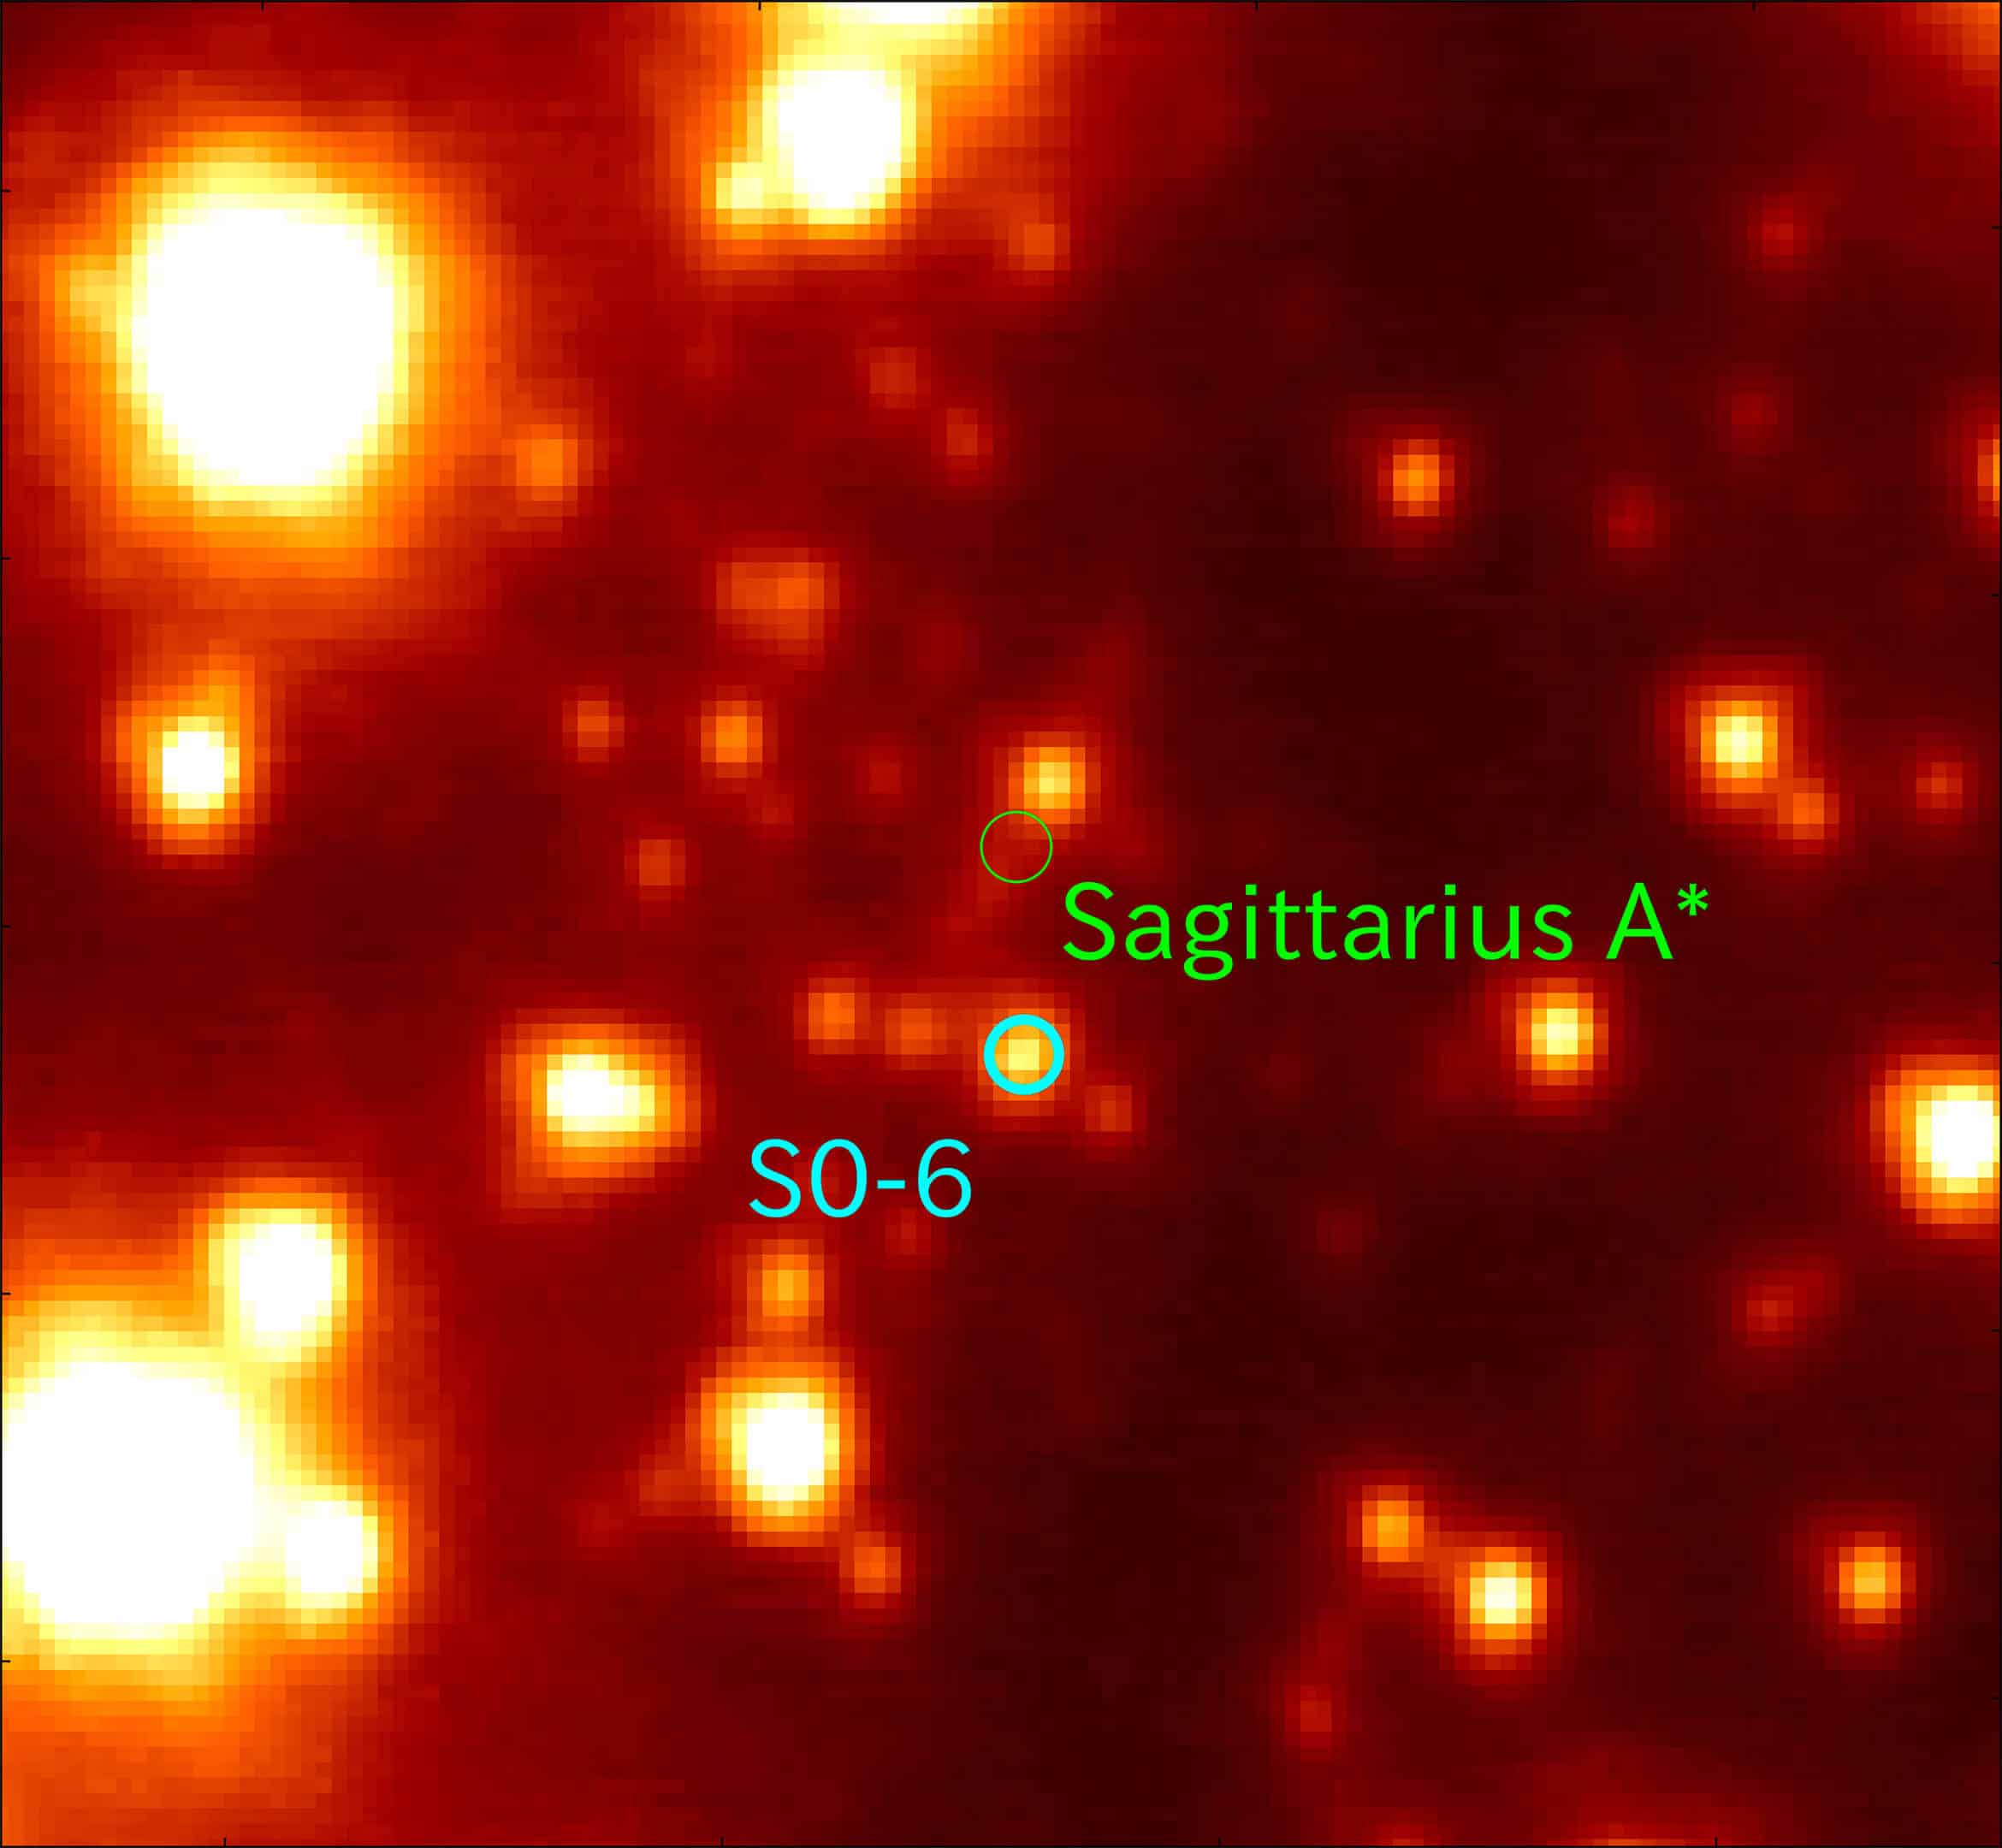 האזור המרכזי של גלקסיית שביל החלב כפי שצילם הטלסקופ סוברו. התמונה מראה כוכבים רבים בשדה ראייה שרוחבו בערך 0.4 שנות אור. הכוכב S0-6 (בעיגול הכחול), נושא המחקר הזה, נמצא בערך 0.04 שנות אור מהחור השחור העל-מסיבי סגיטריוס A* (בעיגול הירוק). קרדיט: Miyagi University of Education/NAOJ